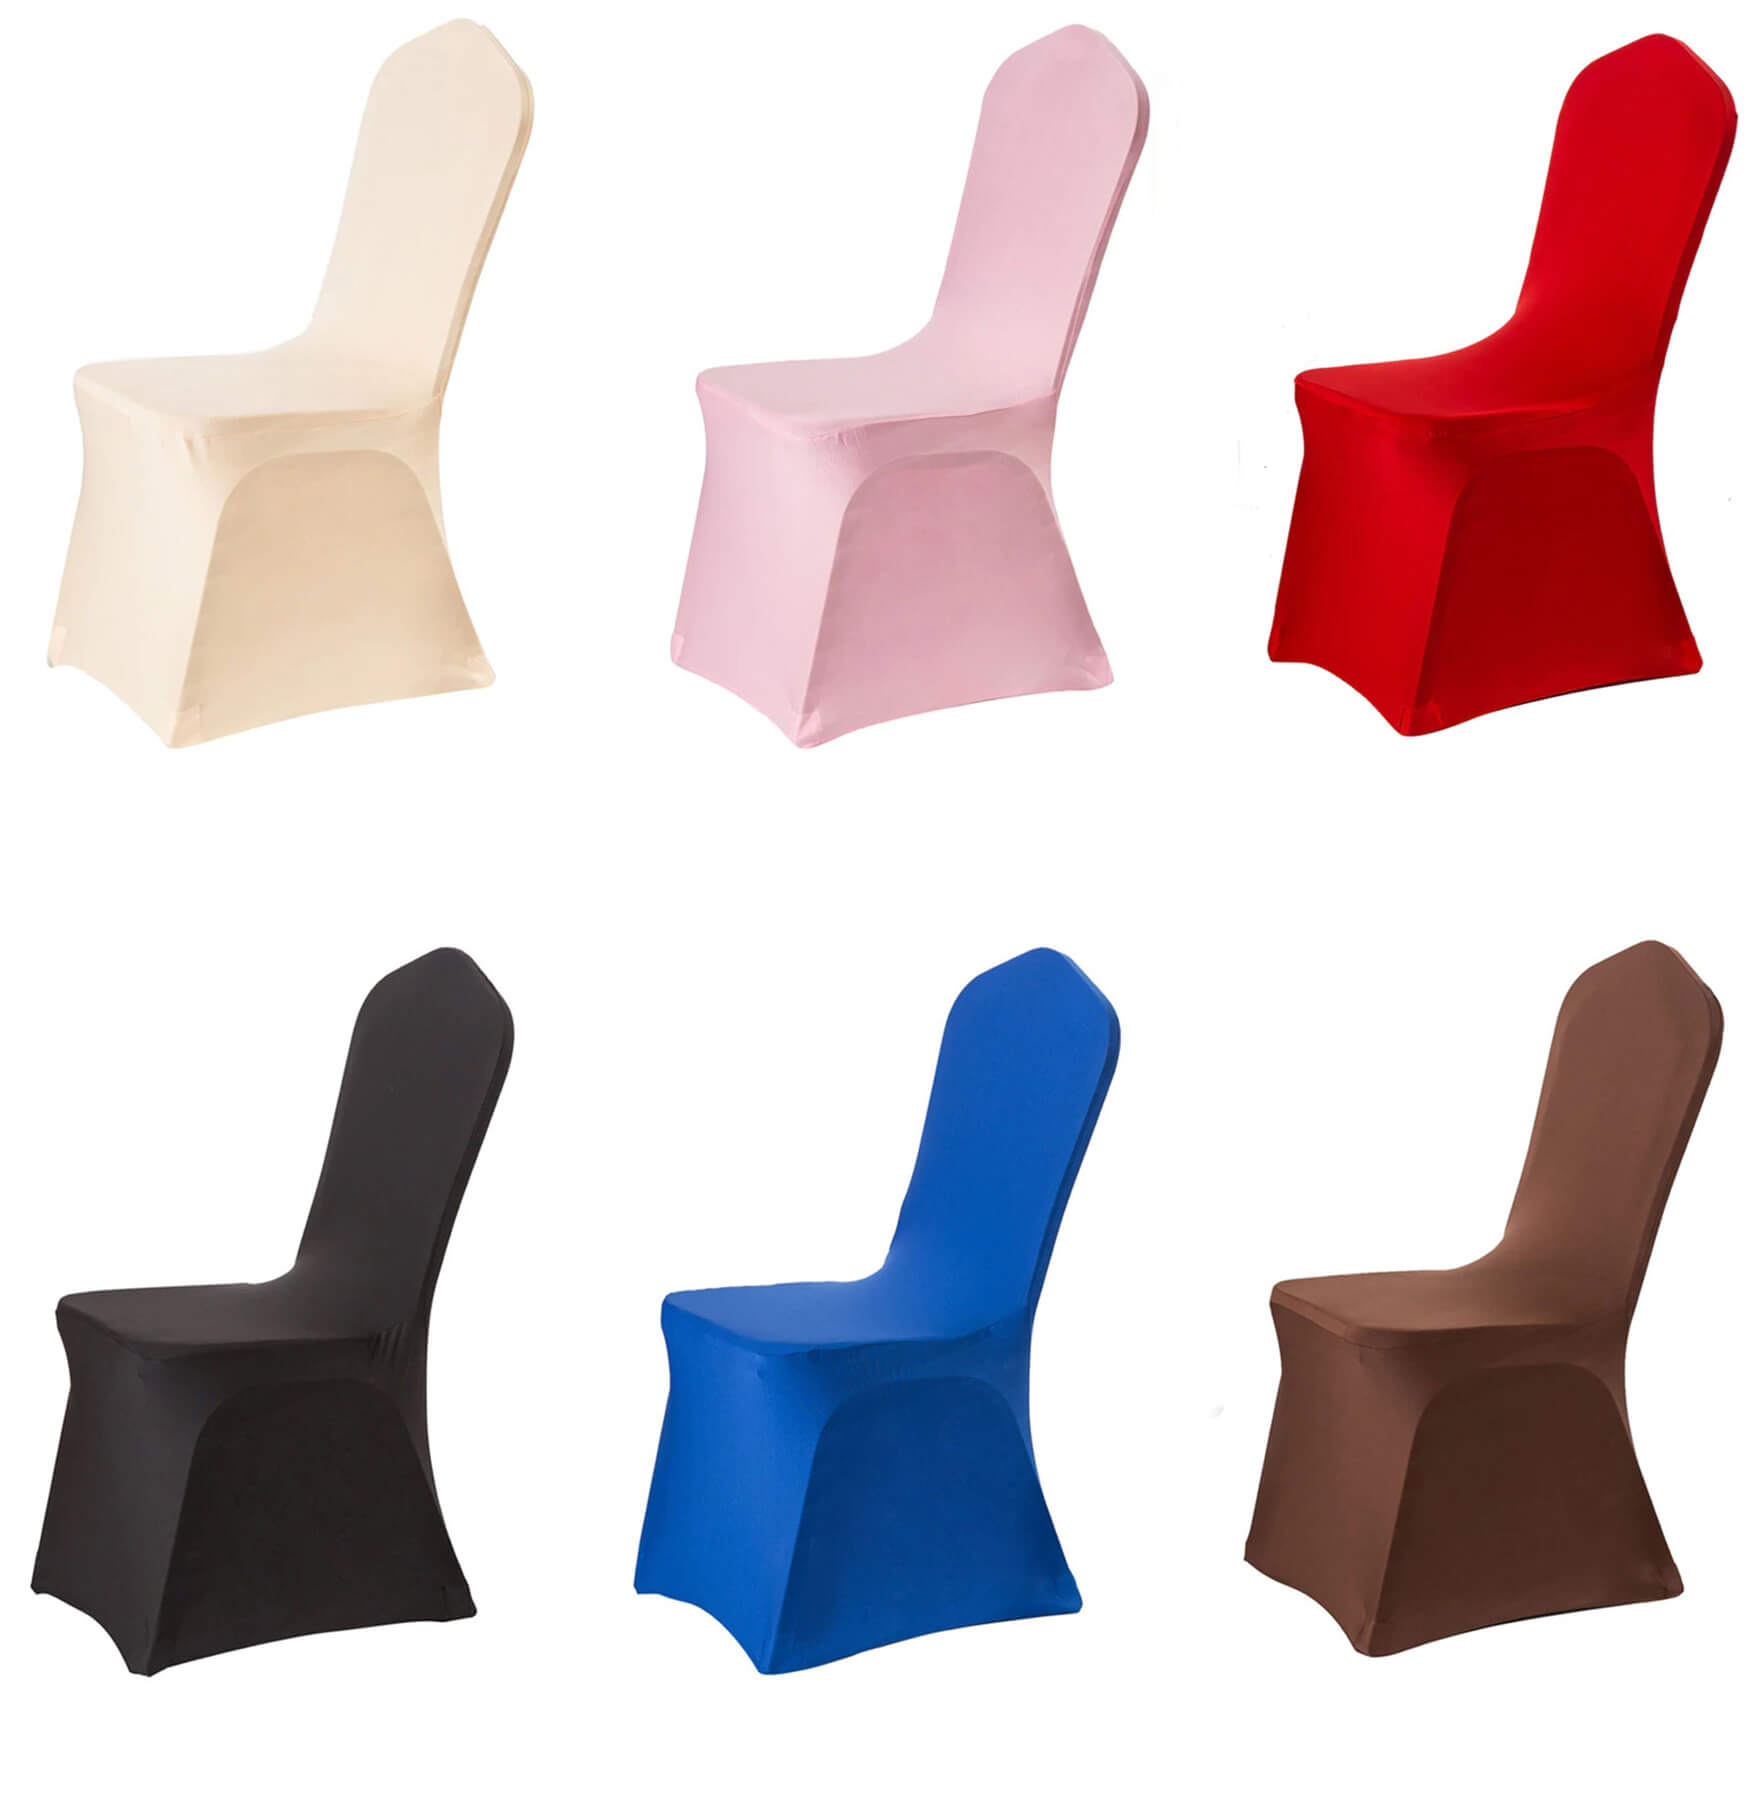 Neuf couleurs différentes de housses de chaises pour mariage disponibles sur notre boutique